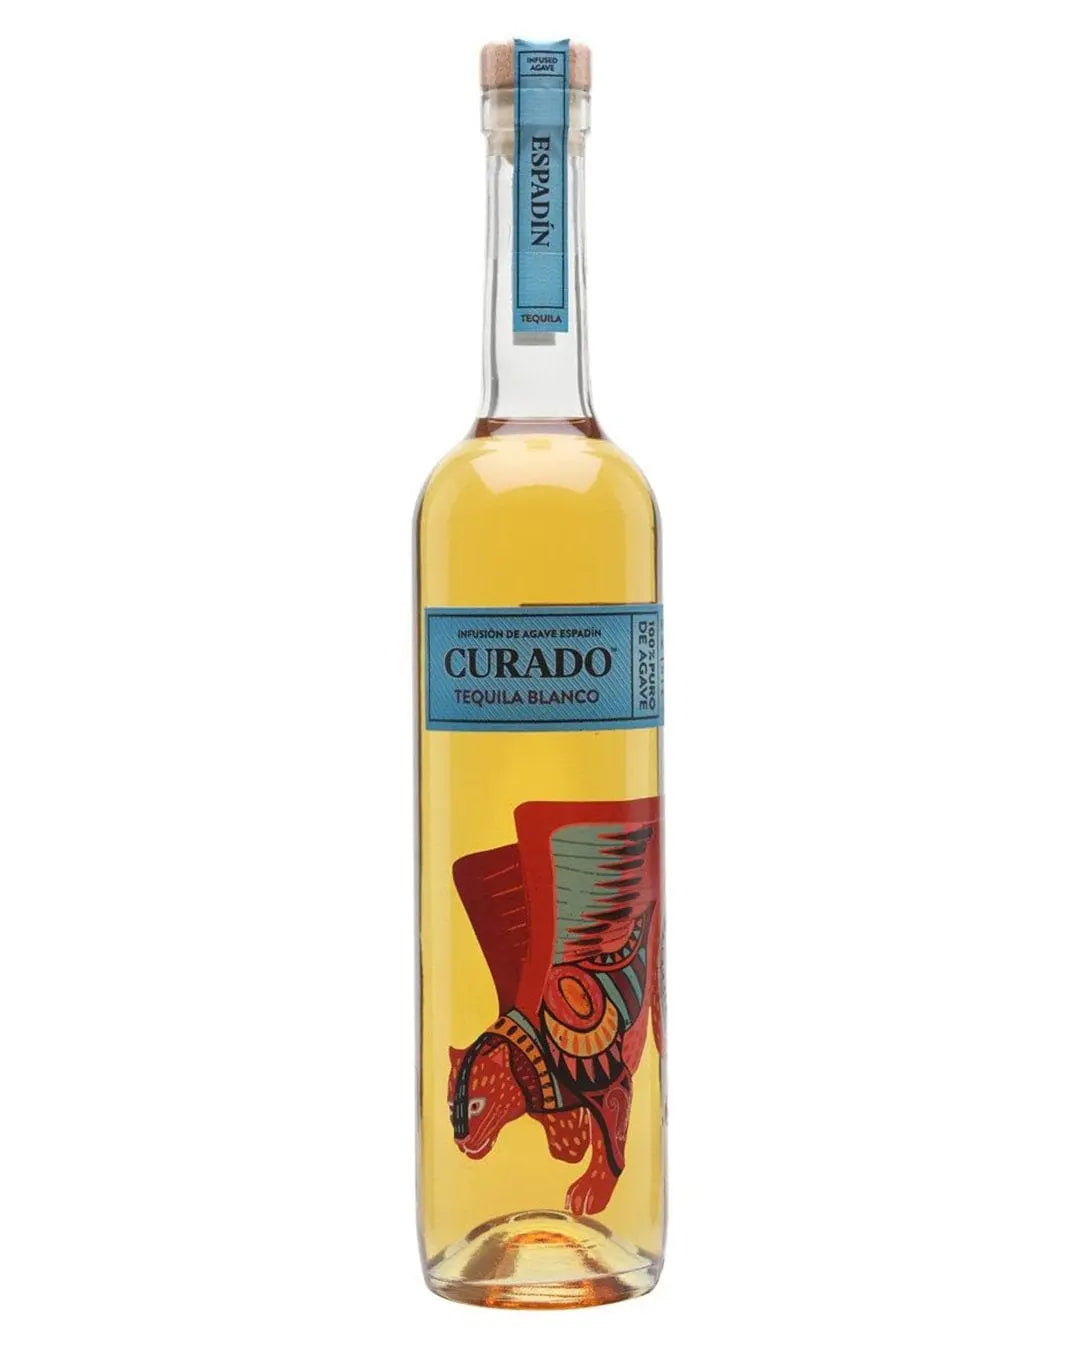 Curado Tequila Blanco - Infusión de Agave Espadín, 70 cl Tequila & Mezcal